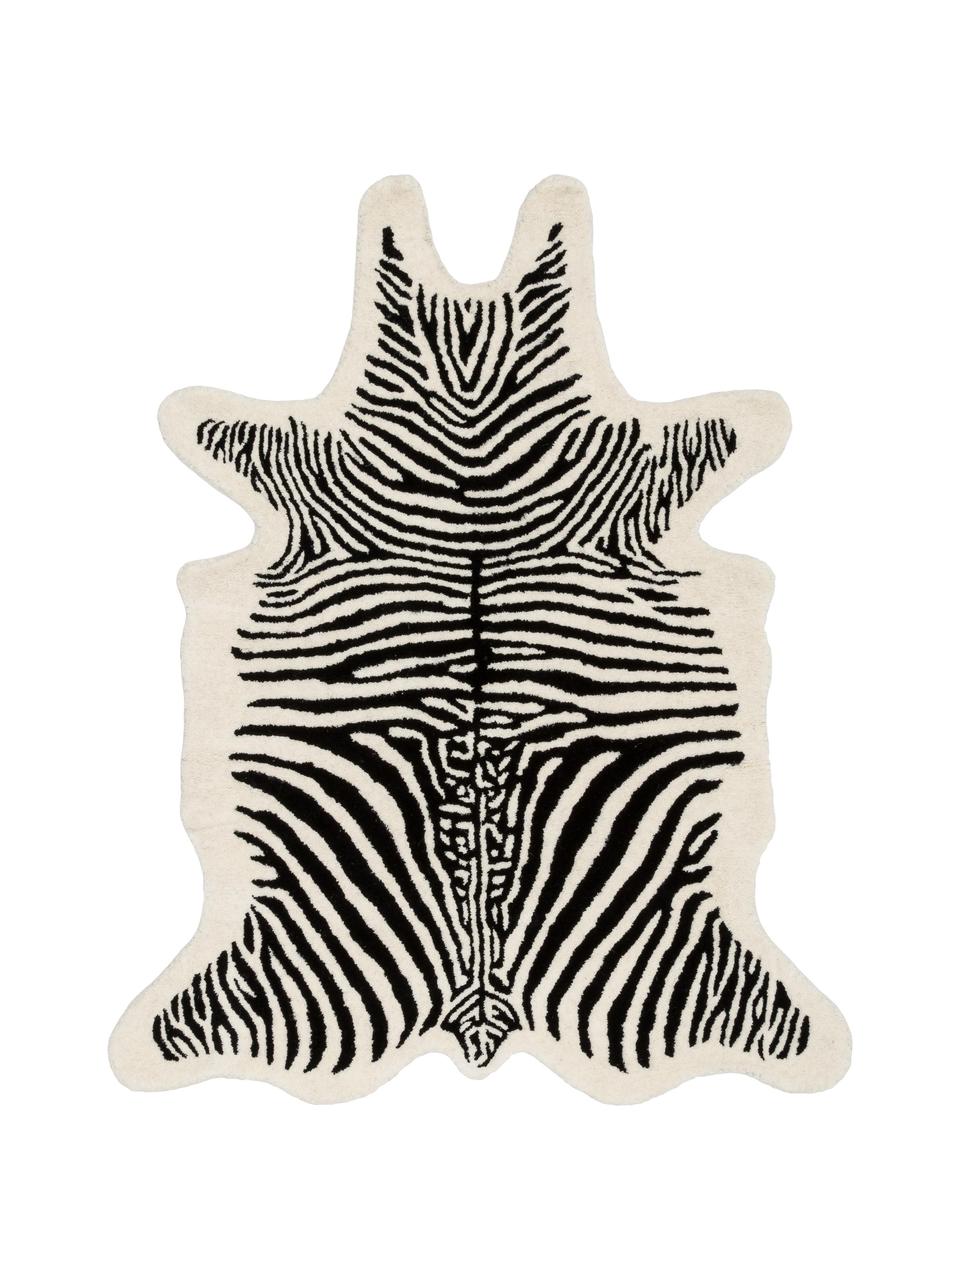 Tapis en laine noir tufté main Savanna Zebra, Noir, blanc crème, larg. 160 x long. 200 cm